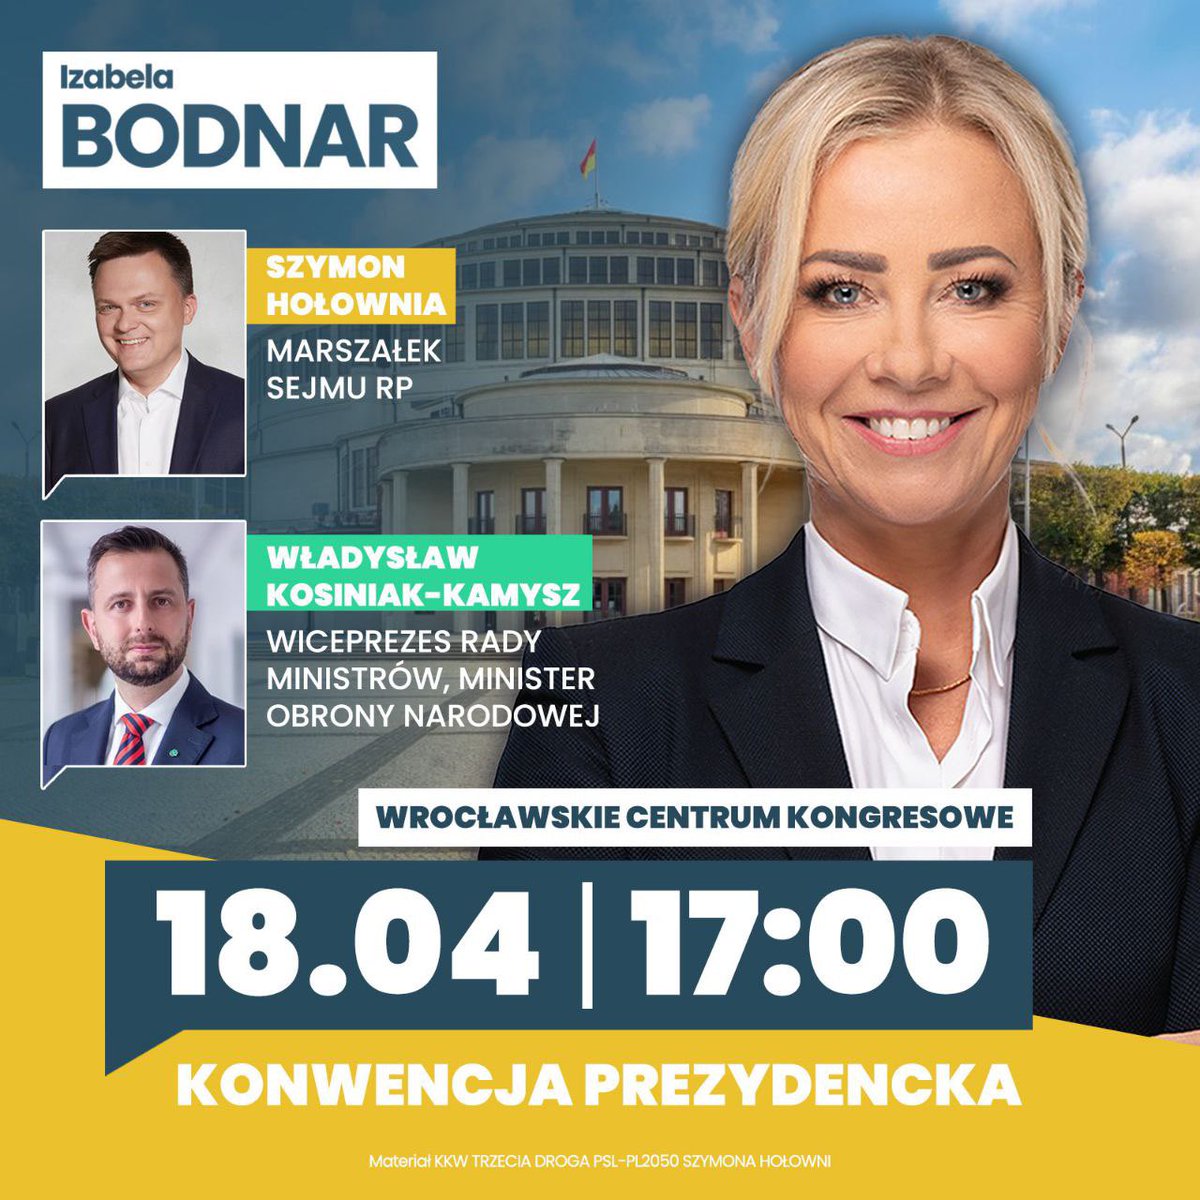 Dziś będę gościć we Wrocławiu znamienitych gości! 💛💚 Szymon Hołownia, Władysław Kosiniak-Kamysz i cała drużyna moich przyjaciół - posłów i ministrów przyjedzie wesprzeć mnie na ostatniej prostej tej kampanii.💪 Do zobaczenia! 🔥 #IzaNaPrezydentke #Wroclaw